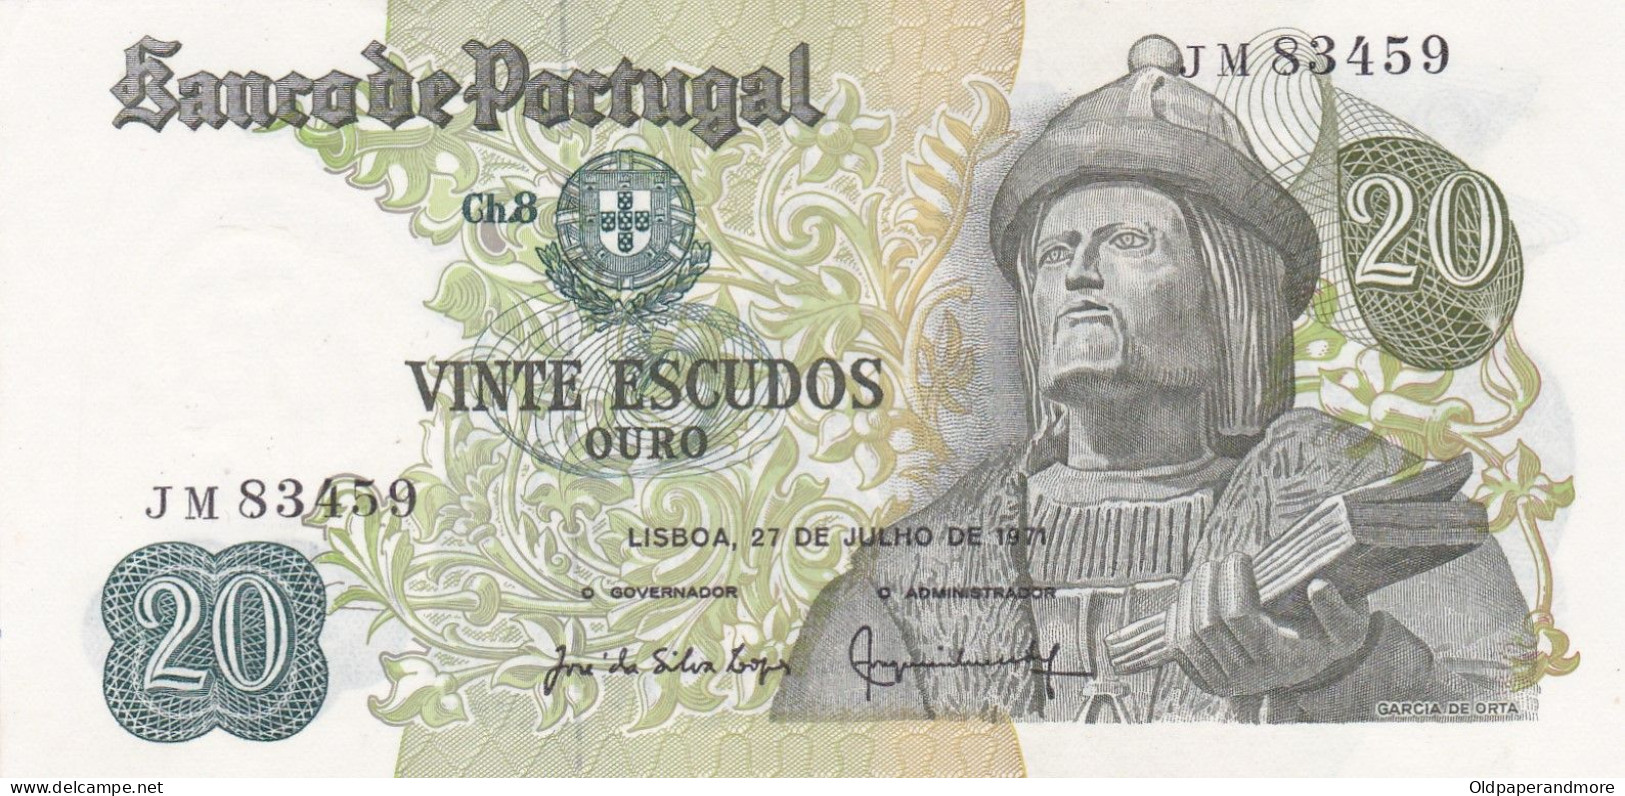 PORTUGAL BANK NOTE - BANKNOTE - 20$00 - CH 8  - 27/07/1971 AUNC - Portogallo